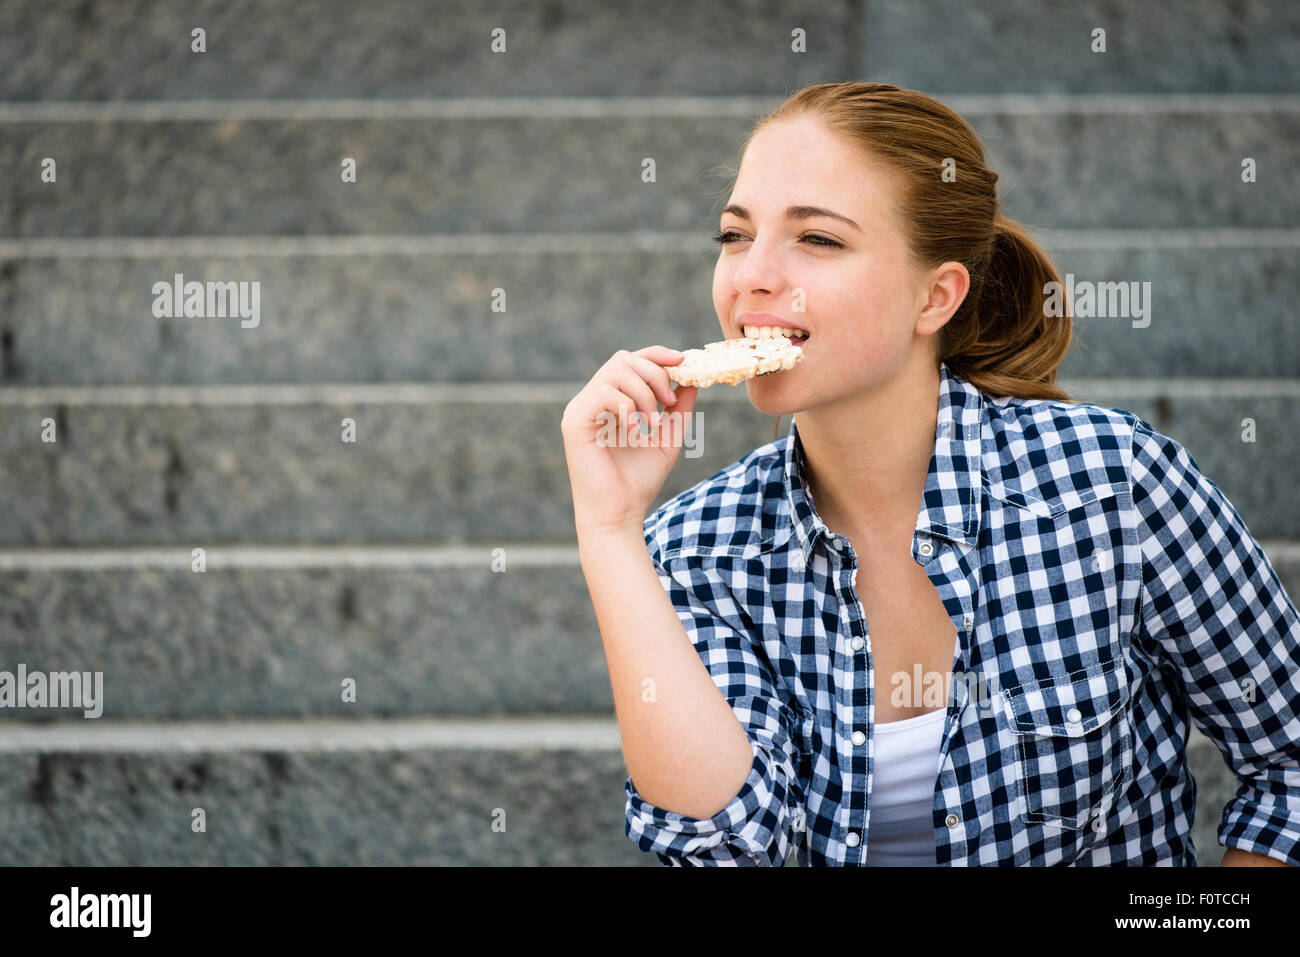 Mode de vie sain - manger du pain soufflé adolescent assis sur des escaliers extérieurs Banque D'Images